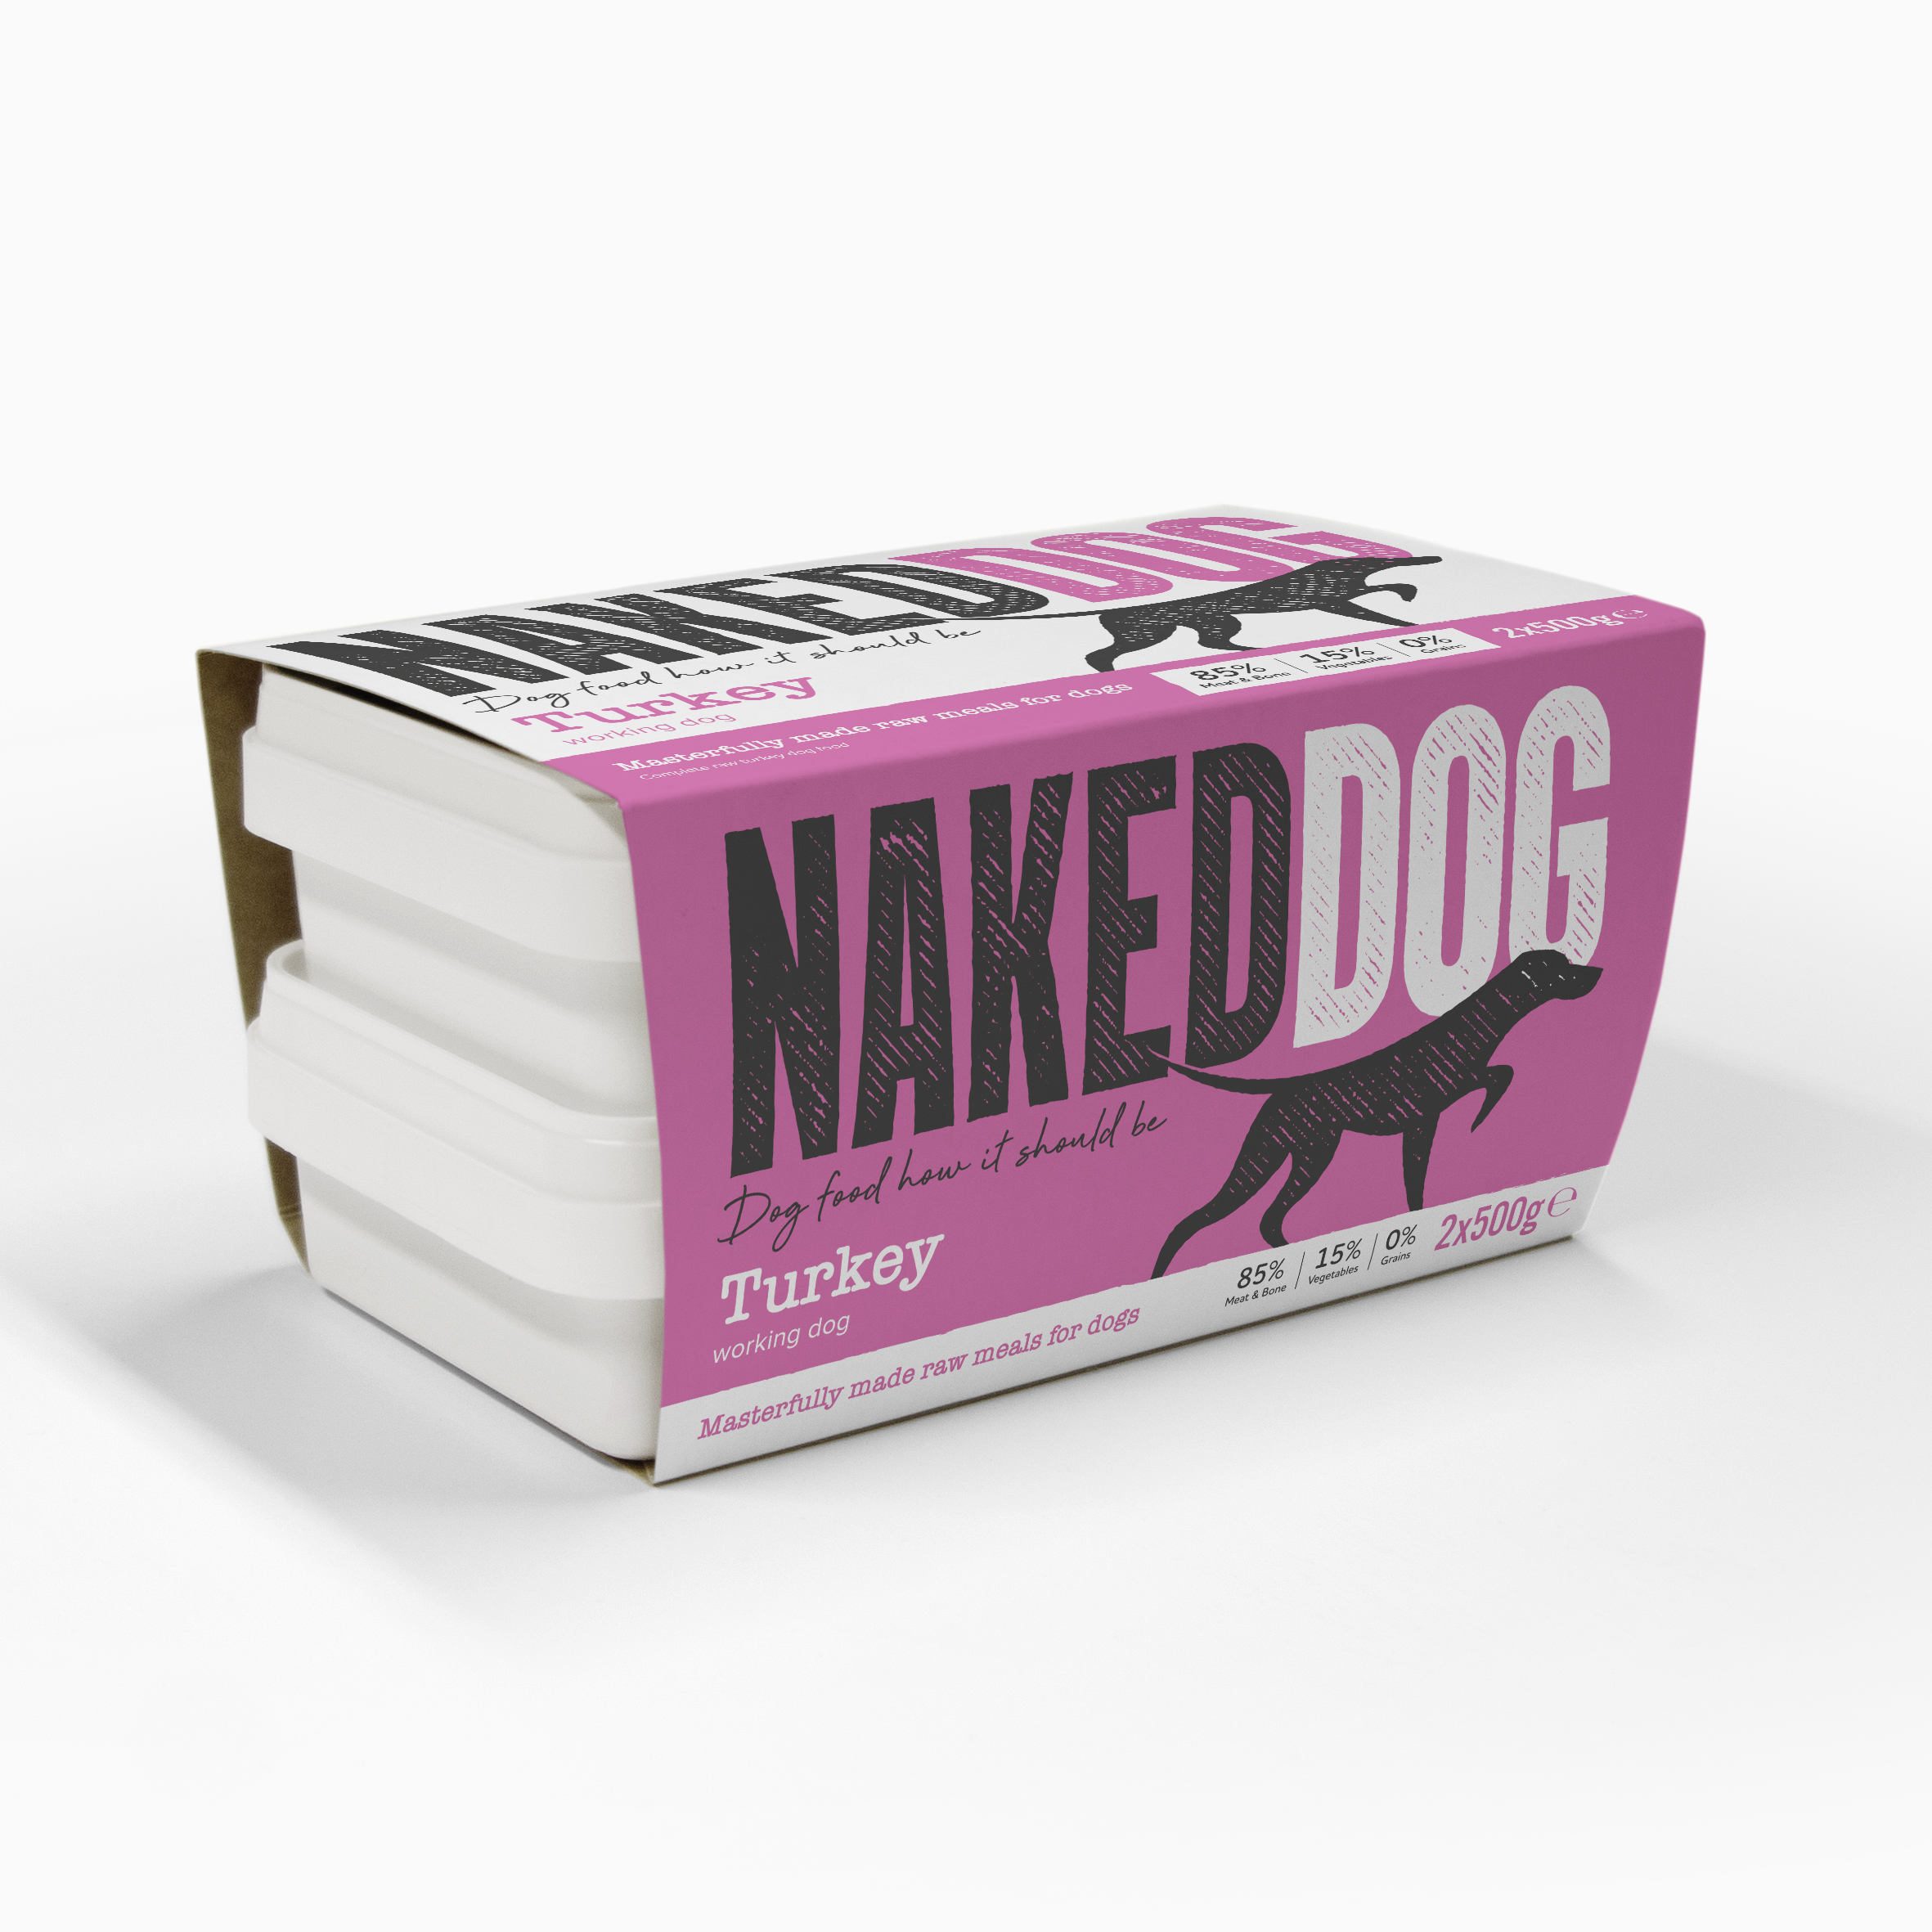 Naked Dog_product image-2x500g pack_Turk